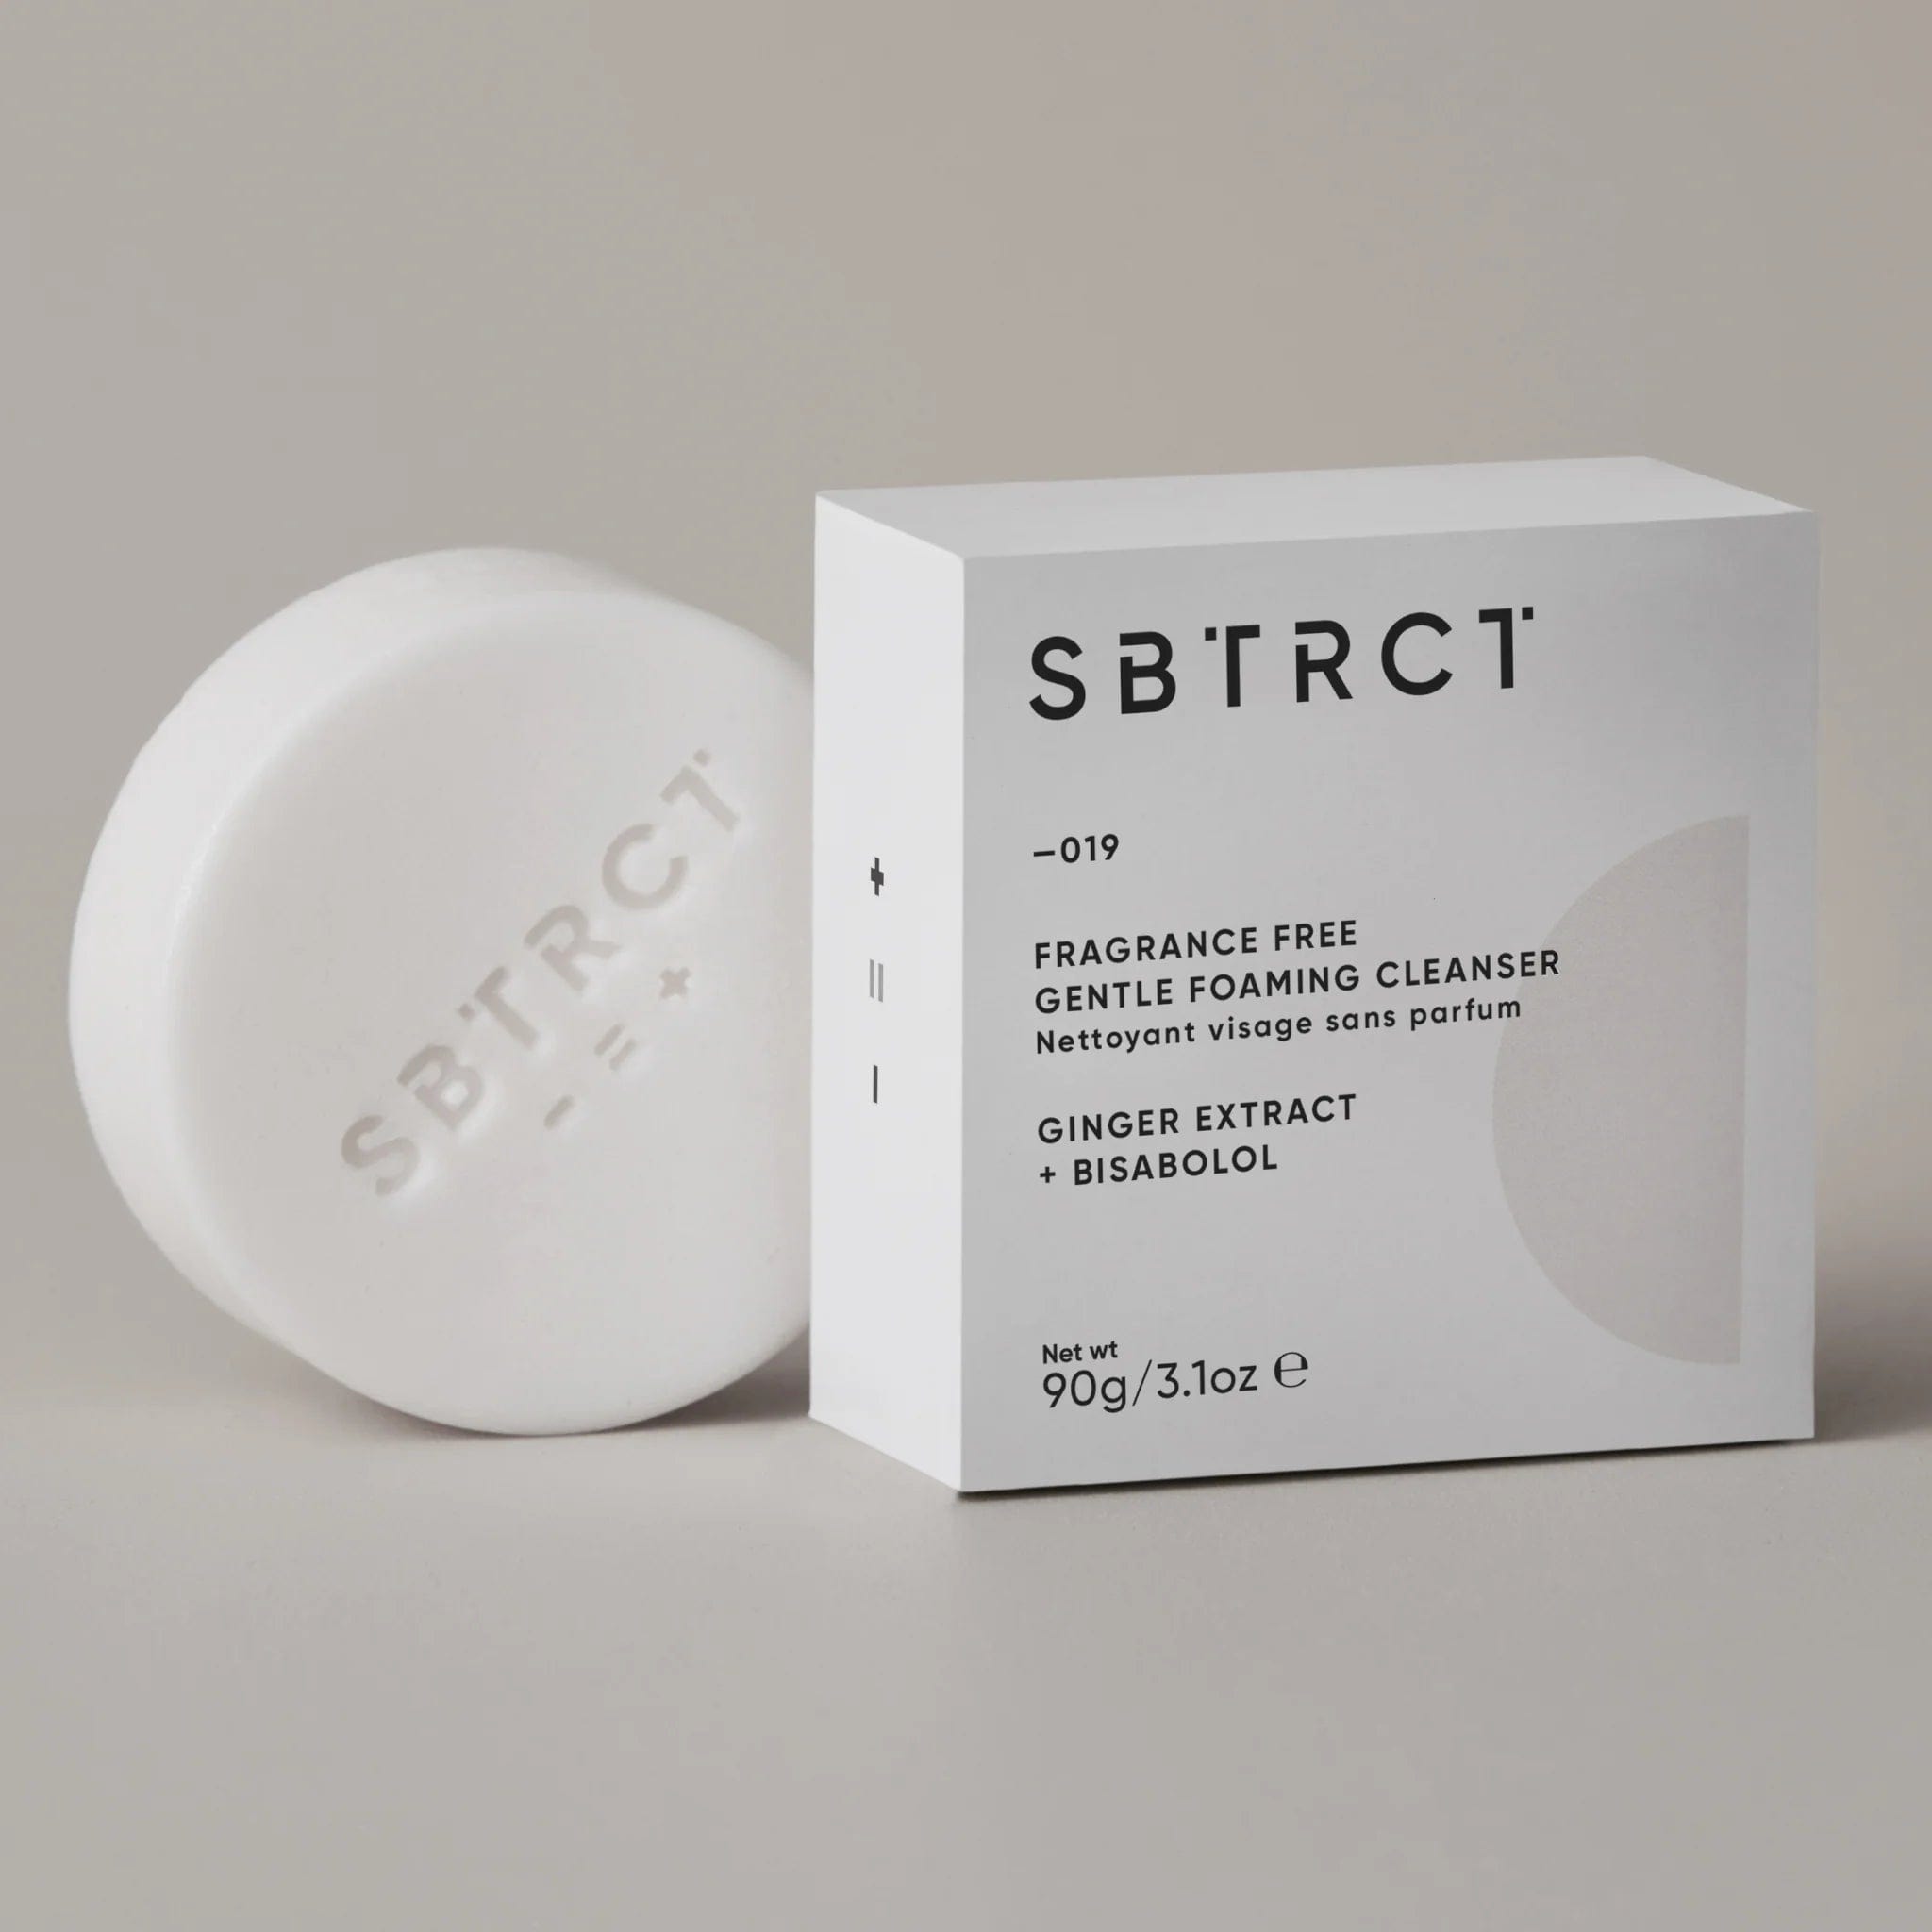 SBTRCT Skincare Fragrance Free Gentle Foaming Cleanser Refill